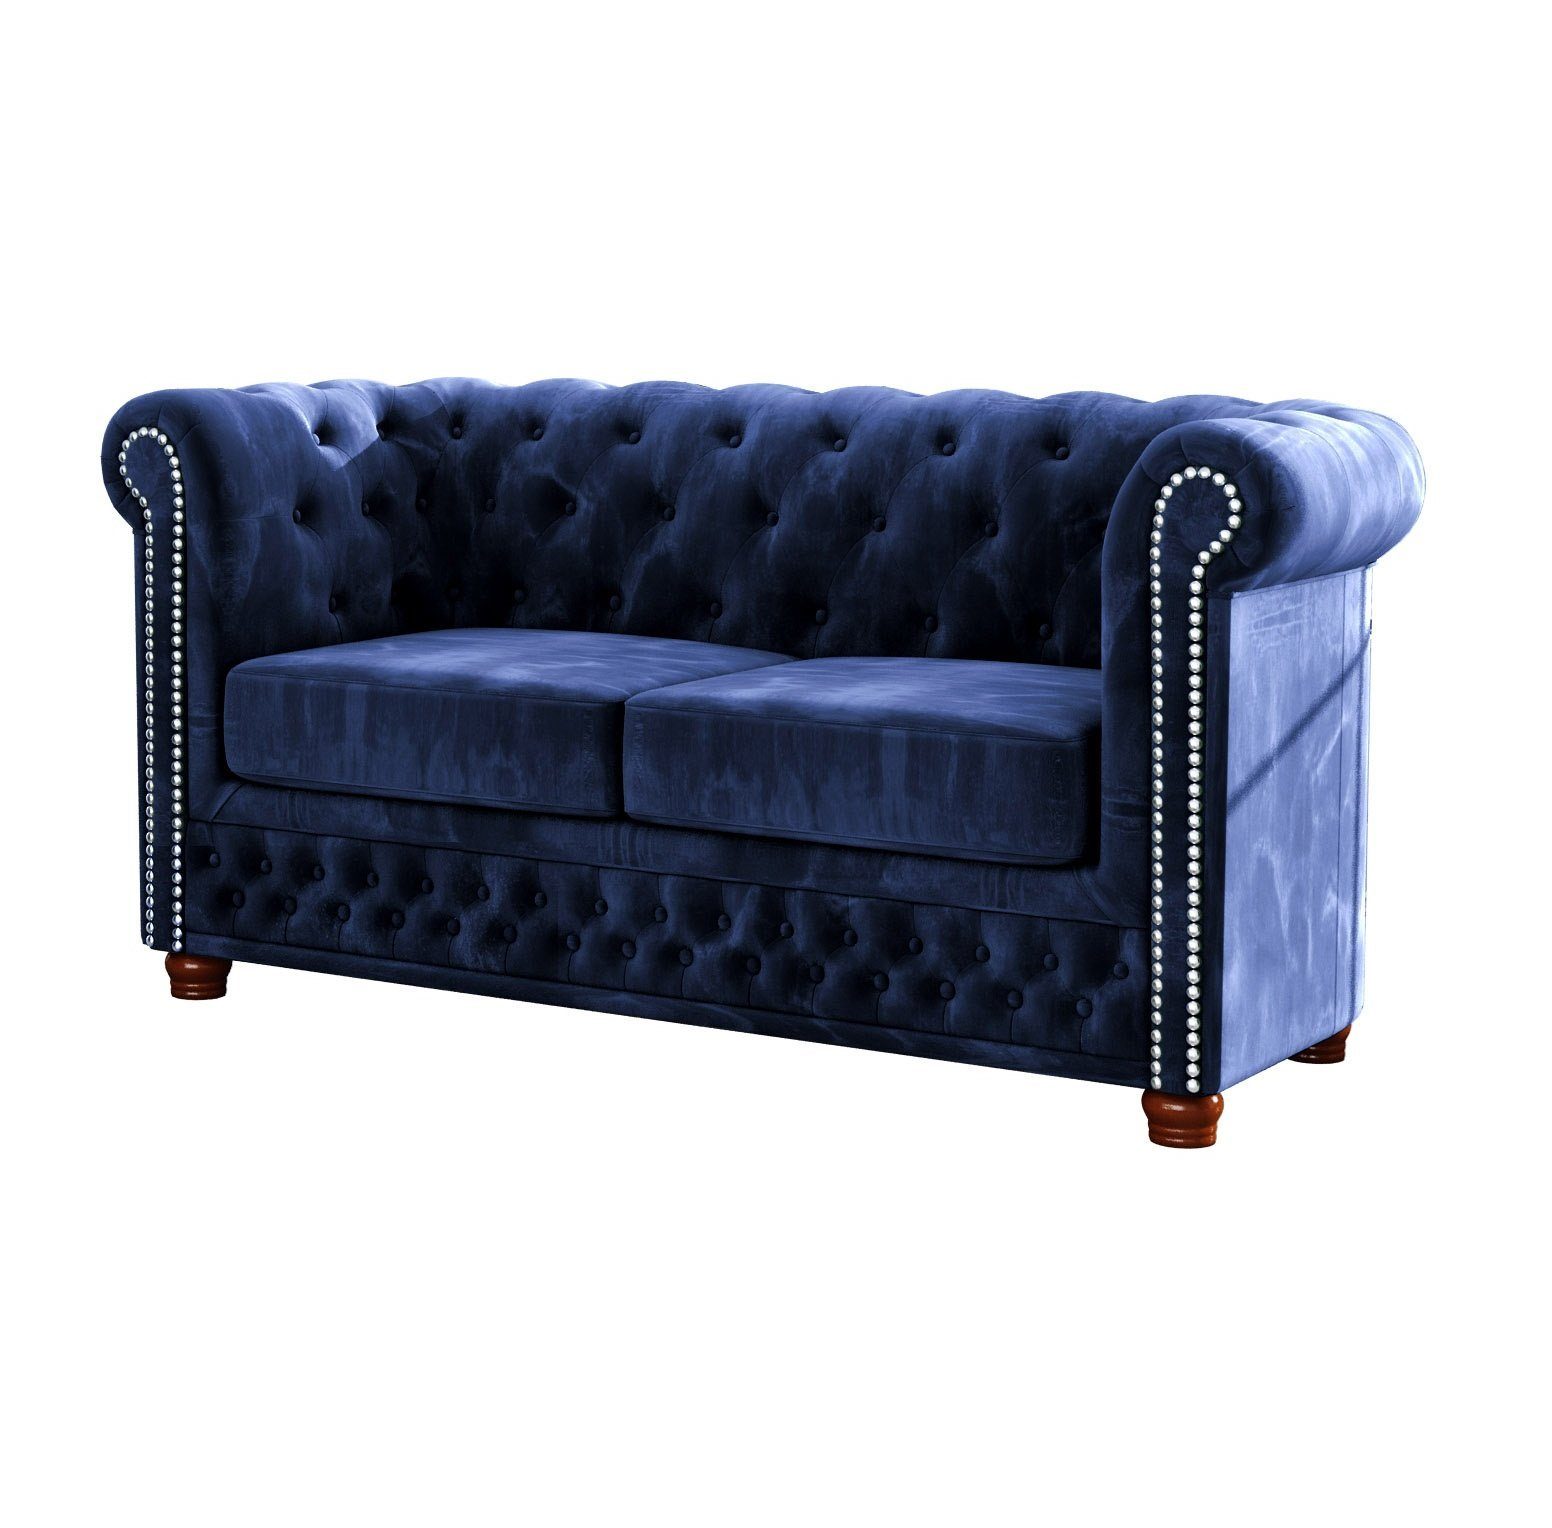 2-Sitzer Sofa, Chesterfield Marineblau S-Style Wellenfederung Möbel Leeds mit